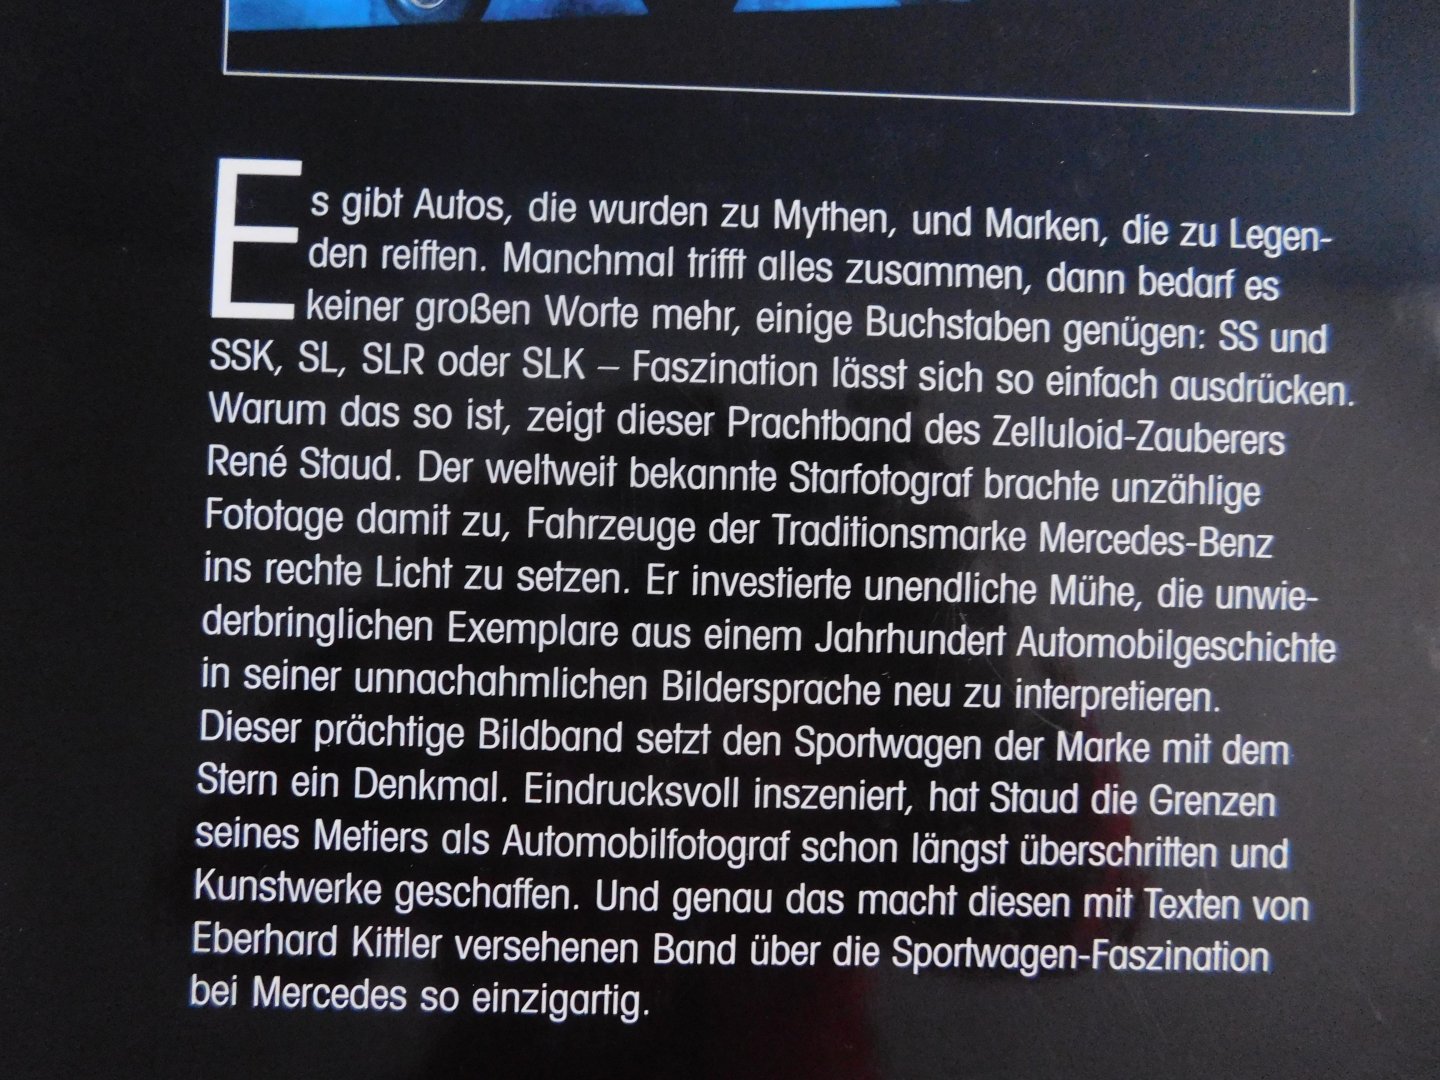 René Staud - Faszination und Mythos: Sportwagen von Mercedes-Benz